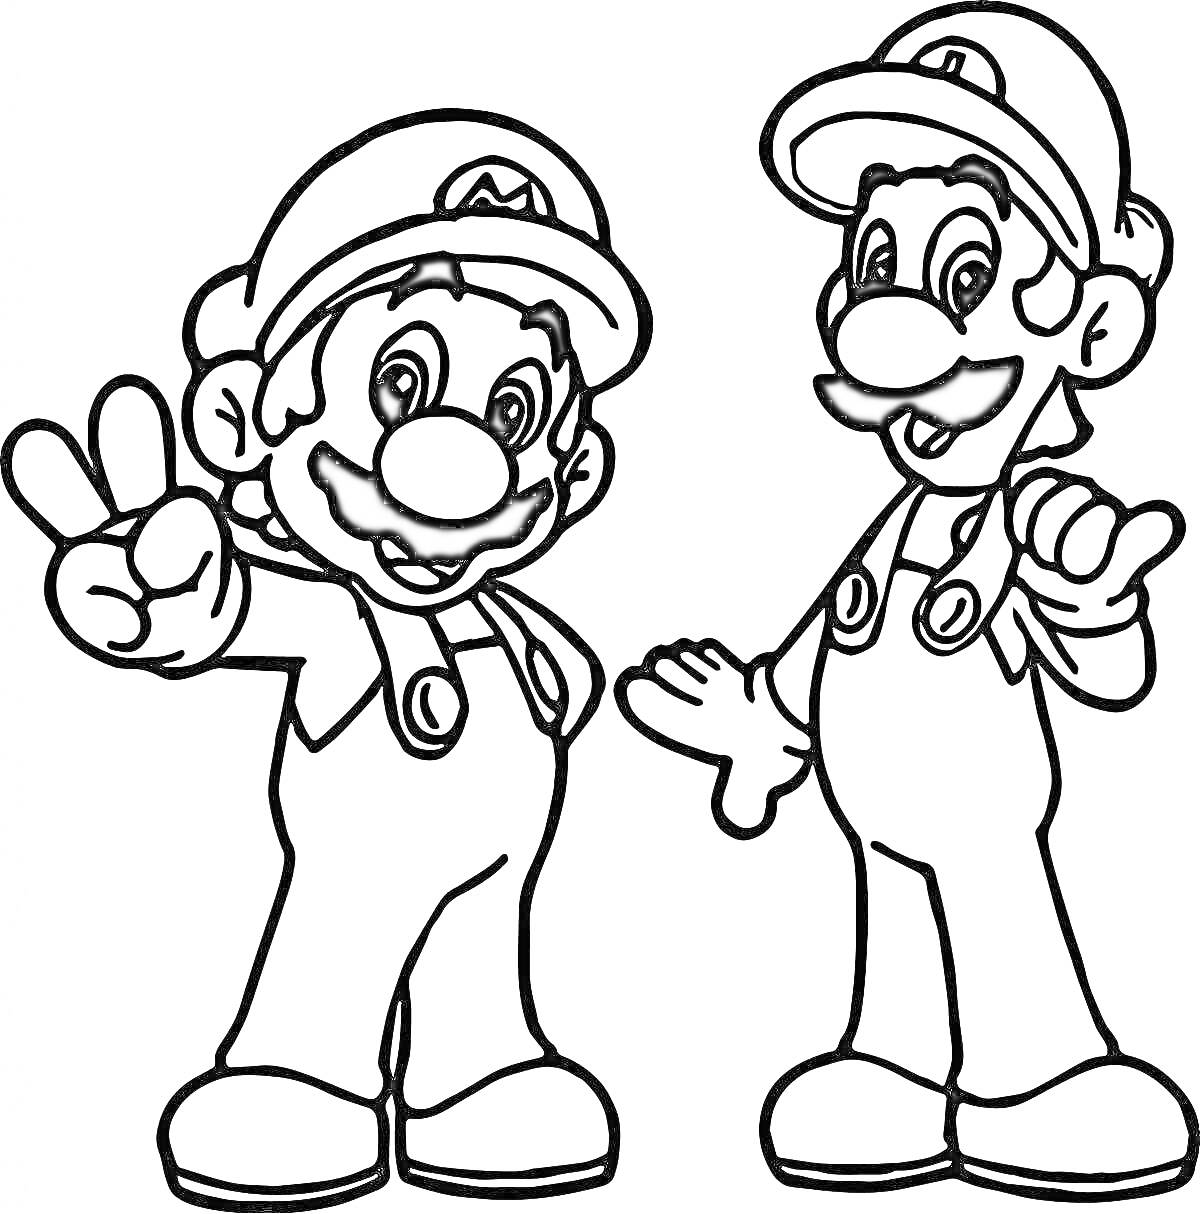 Два персонажа в костюмах Марио, один показывает знак 